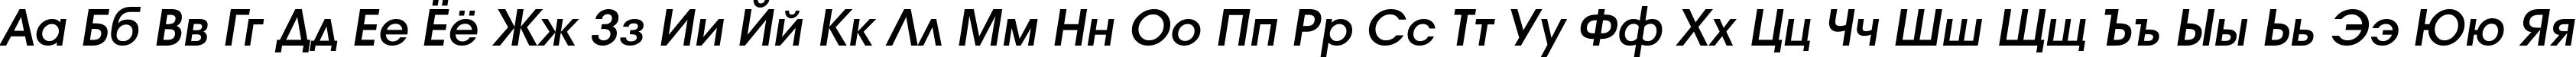 Пример написания русского алфавита шрифтом a_AvanteLt DemiBoldItalic